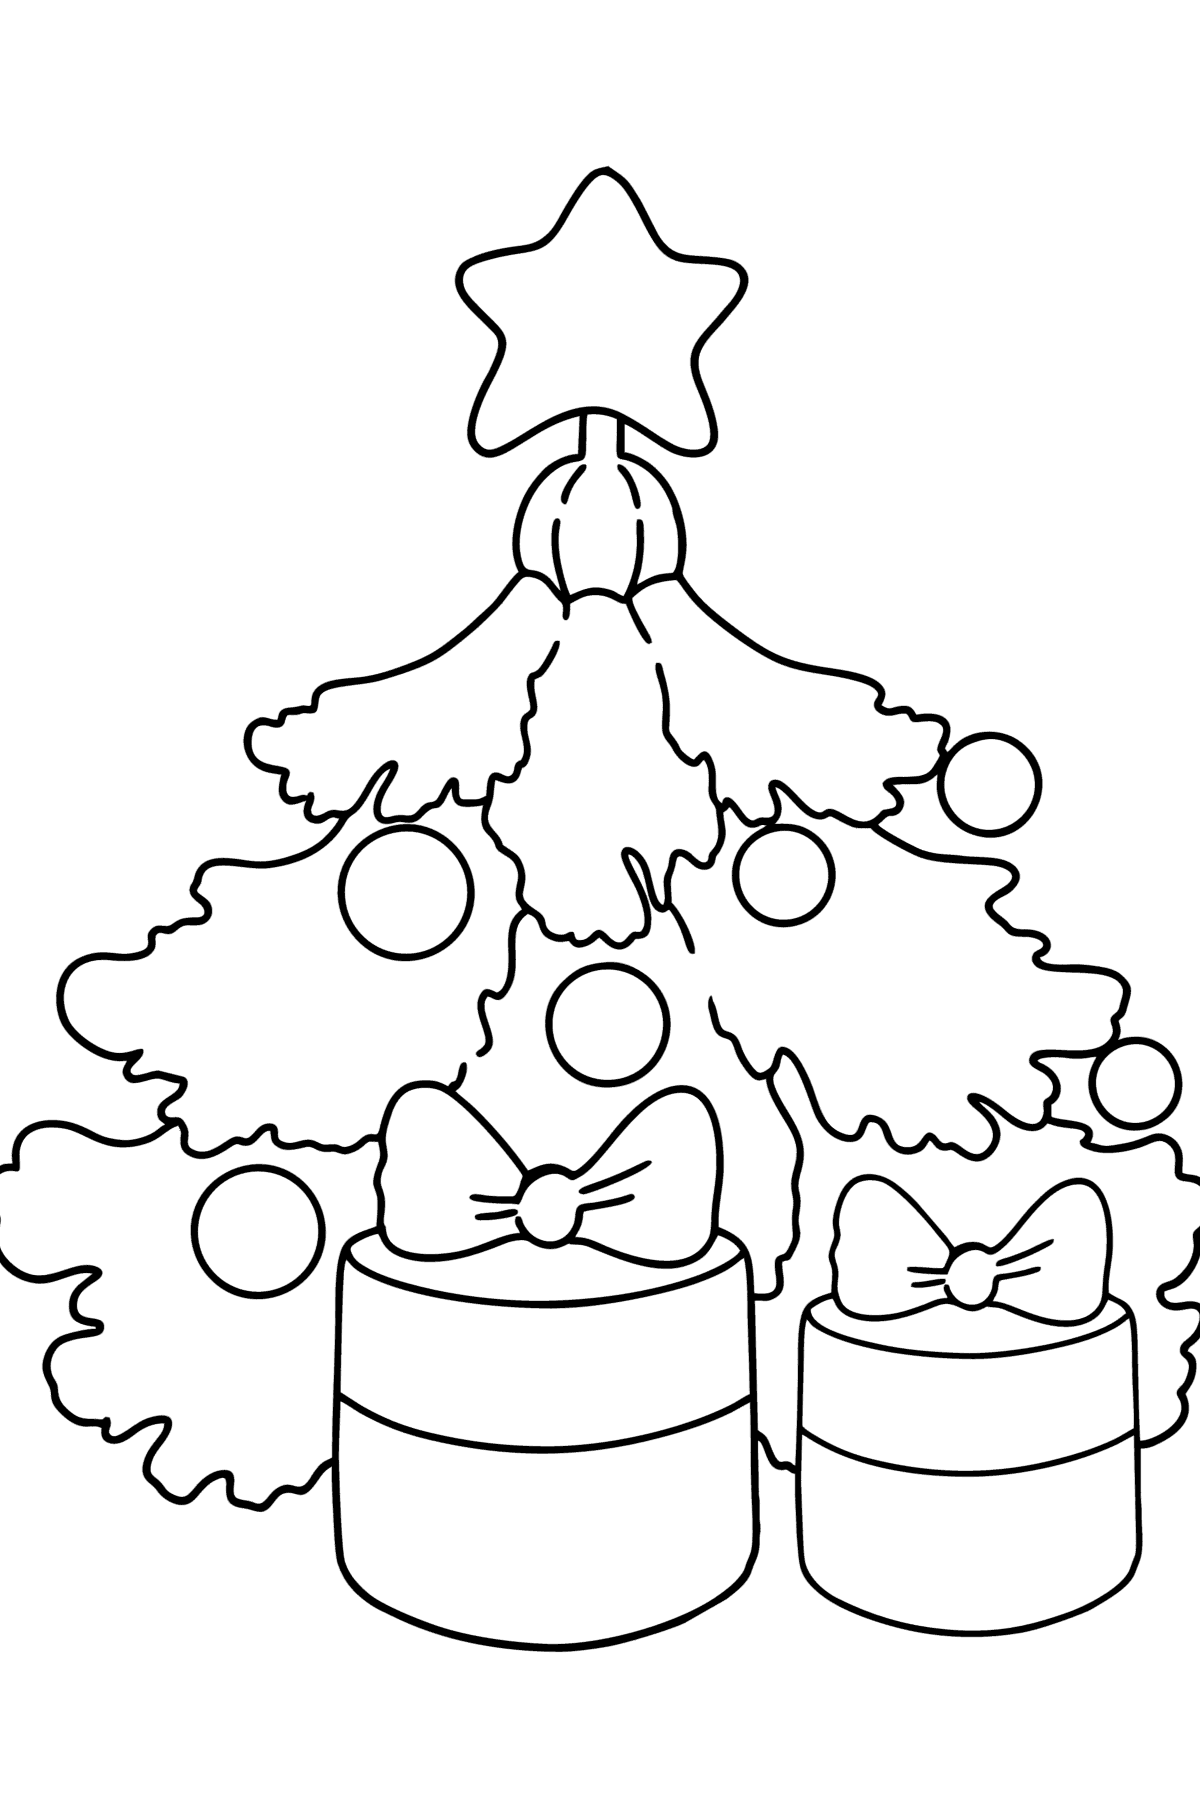 Dibujo de Árbol de Navidad y regalos para colorear - Dibujos para Colorear para Niños